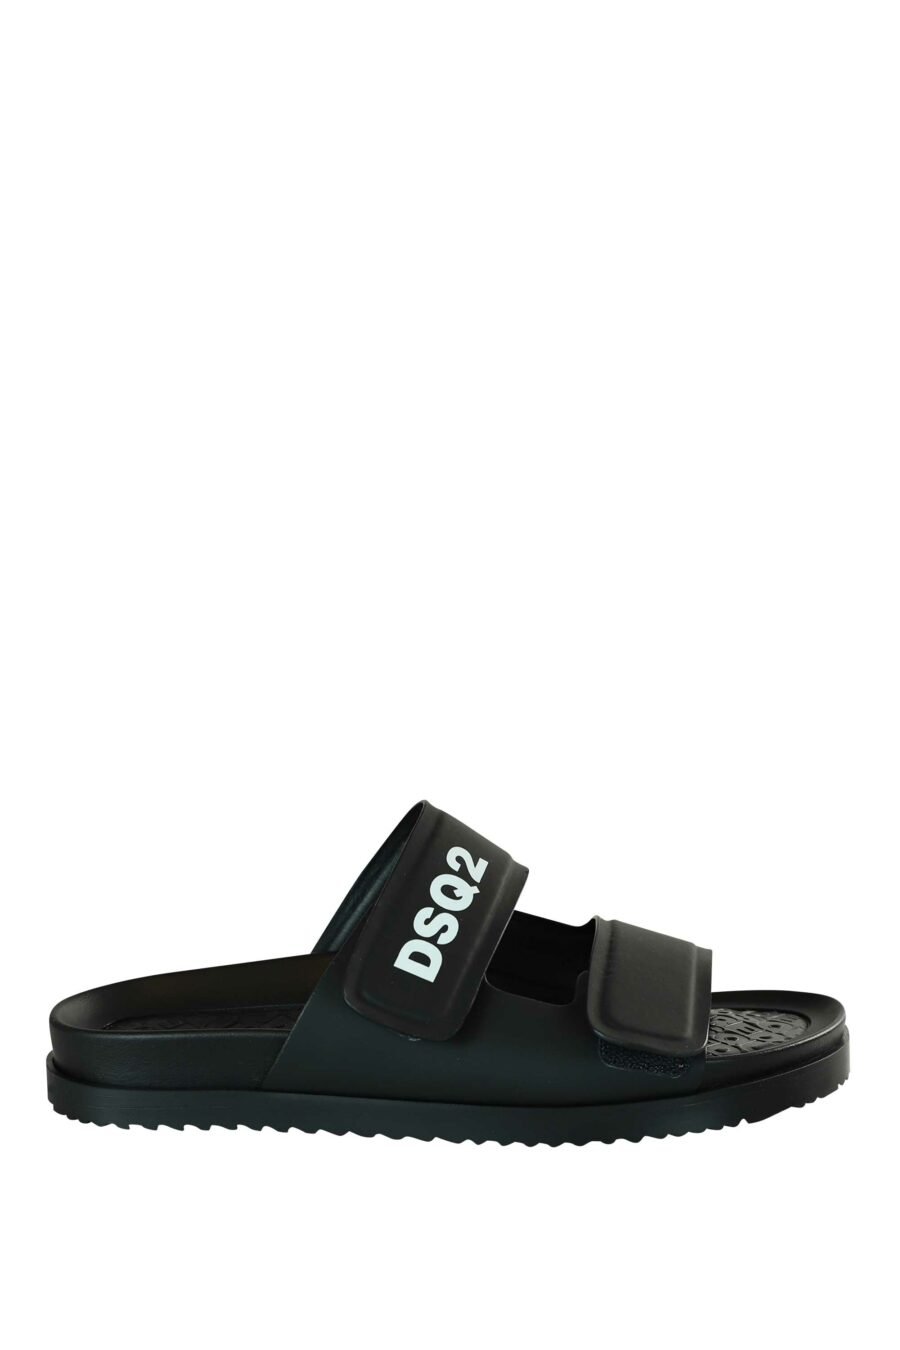 Schwarze Sandalen mit weißem "dsq2" Logo und Klettverschluss - 8055777203200